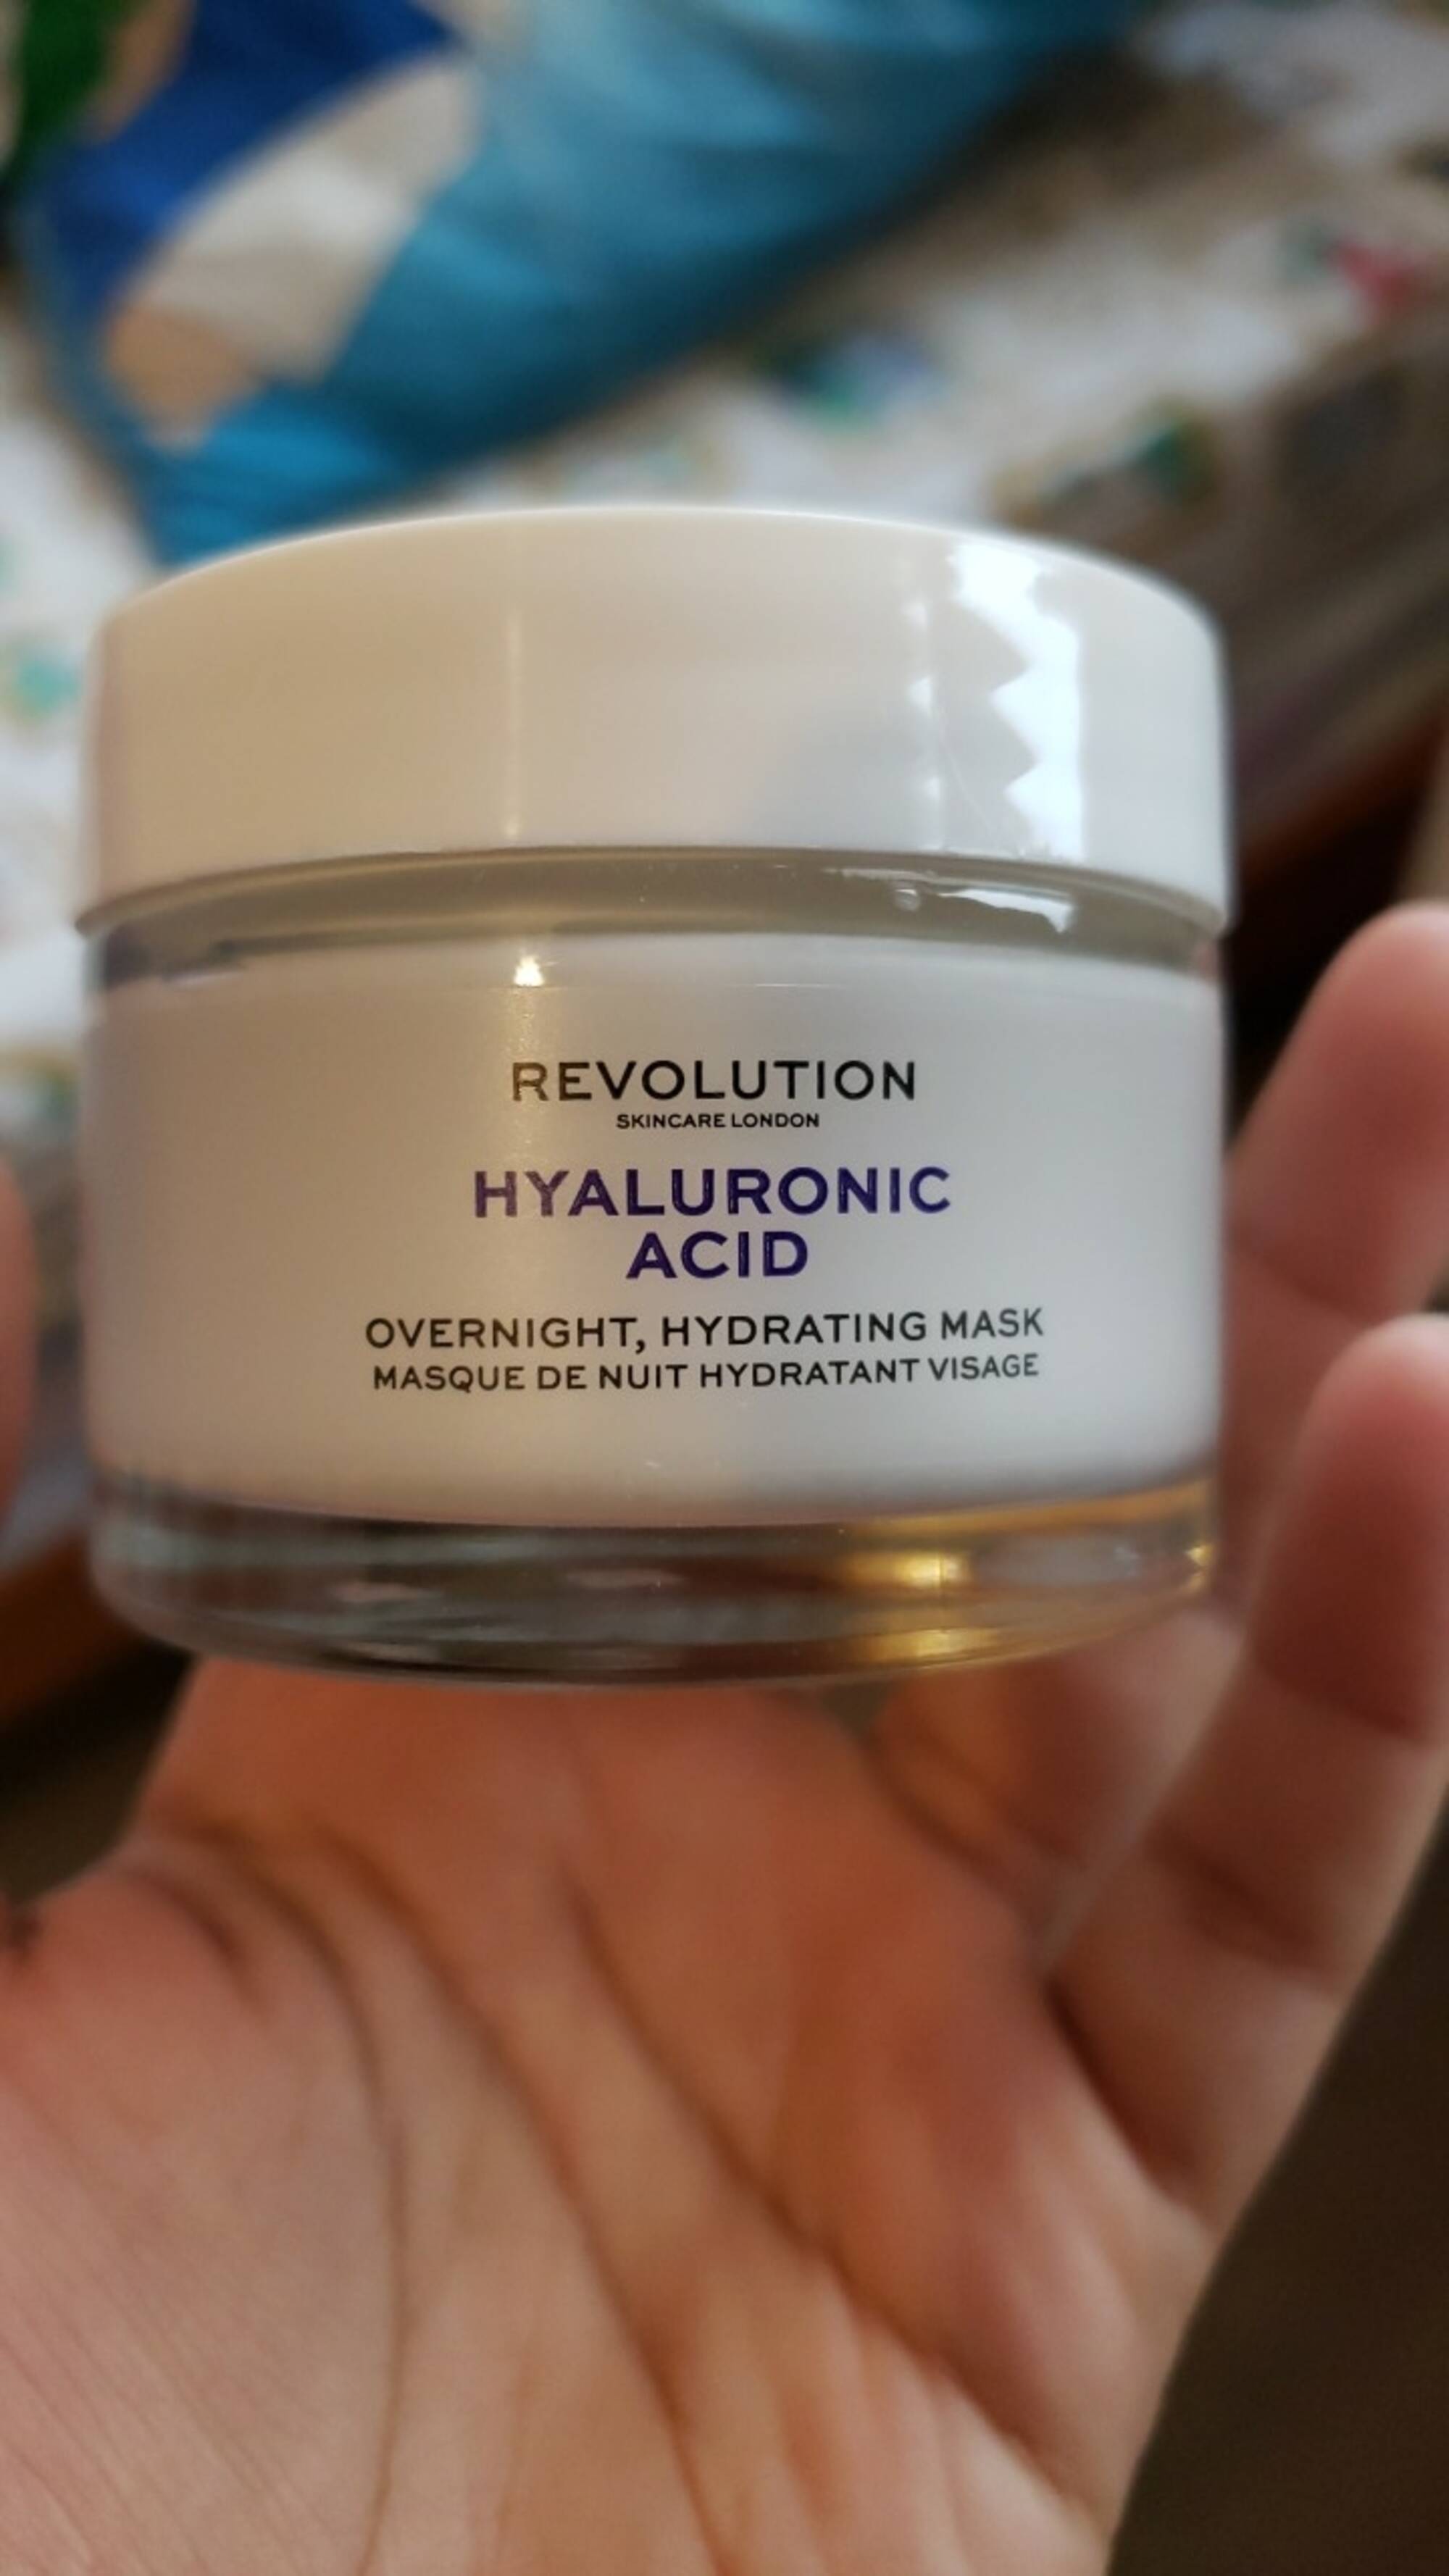 MAKEUP REVOLUTION - Hyaluronic acid - Masque de nuit hydratant visage